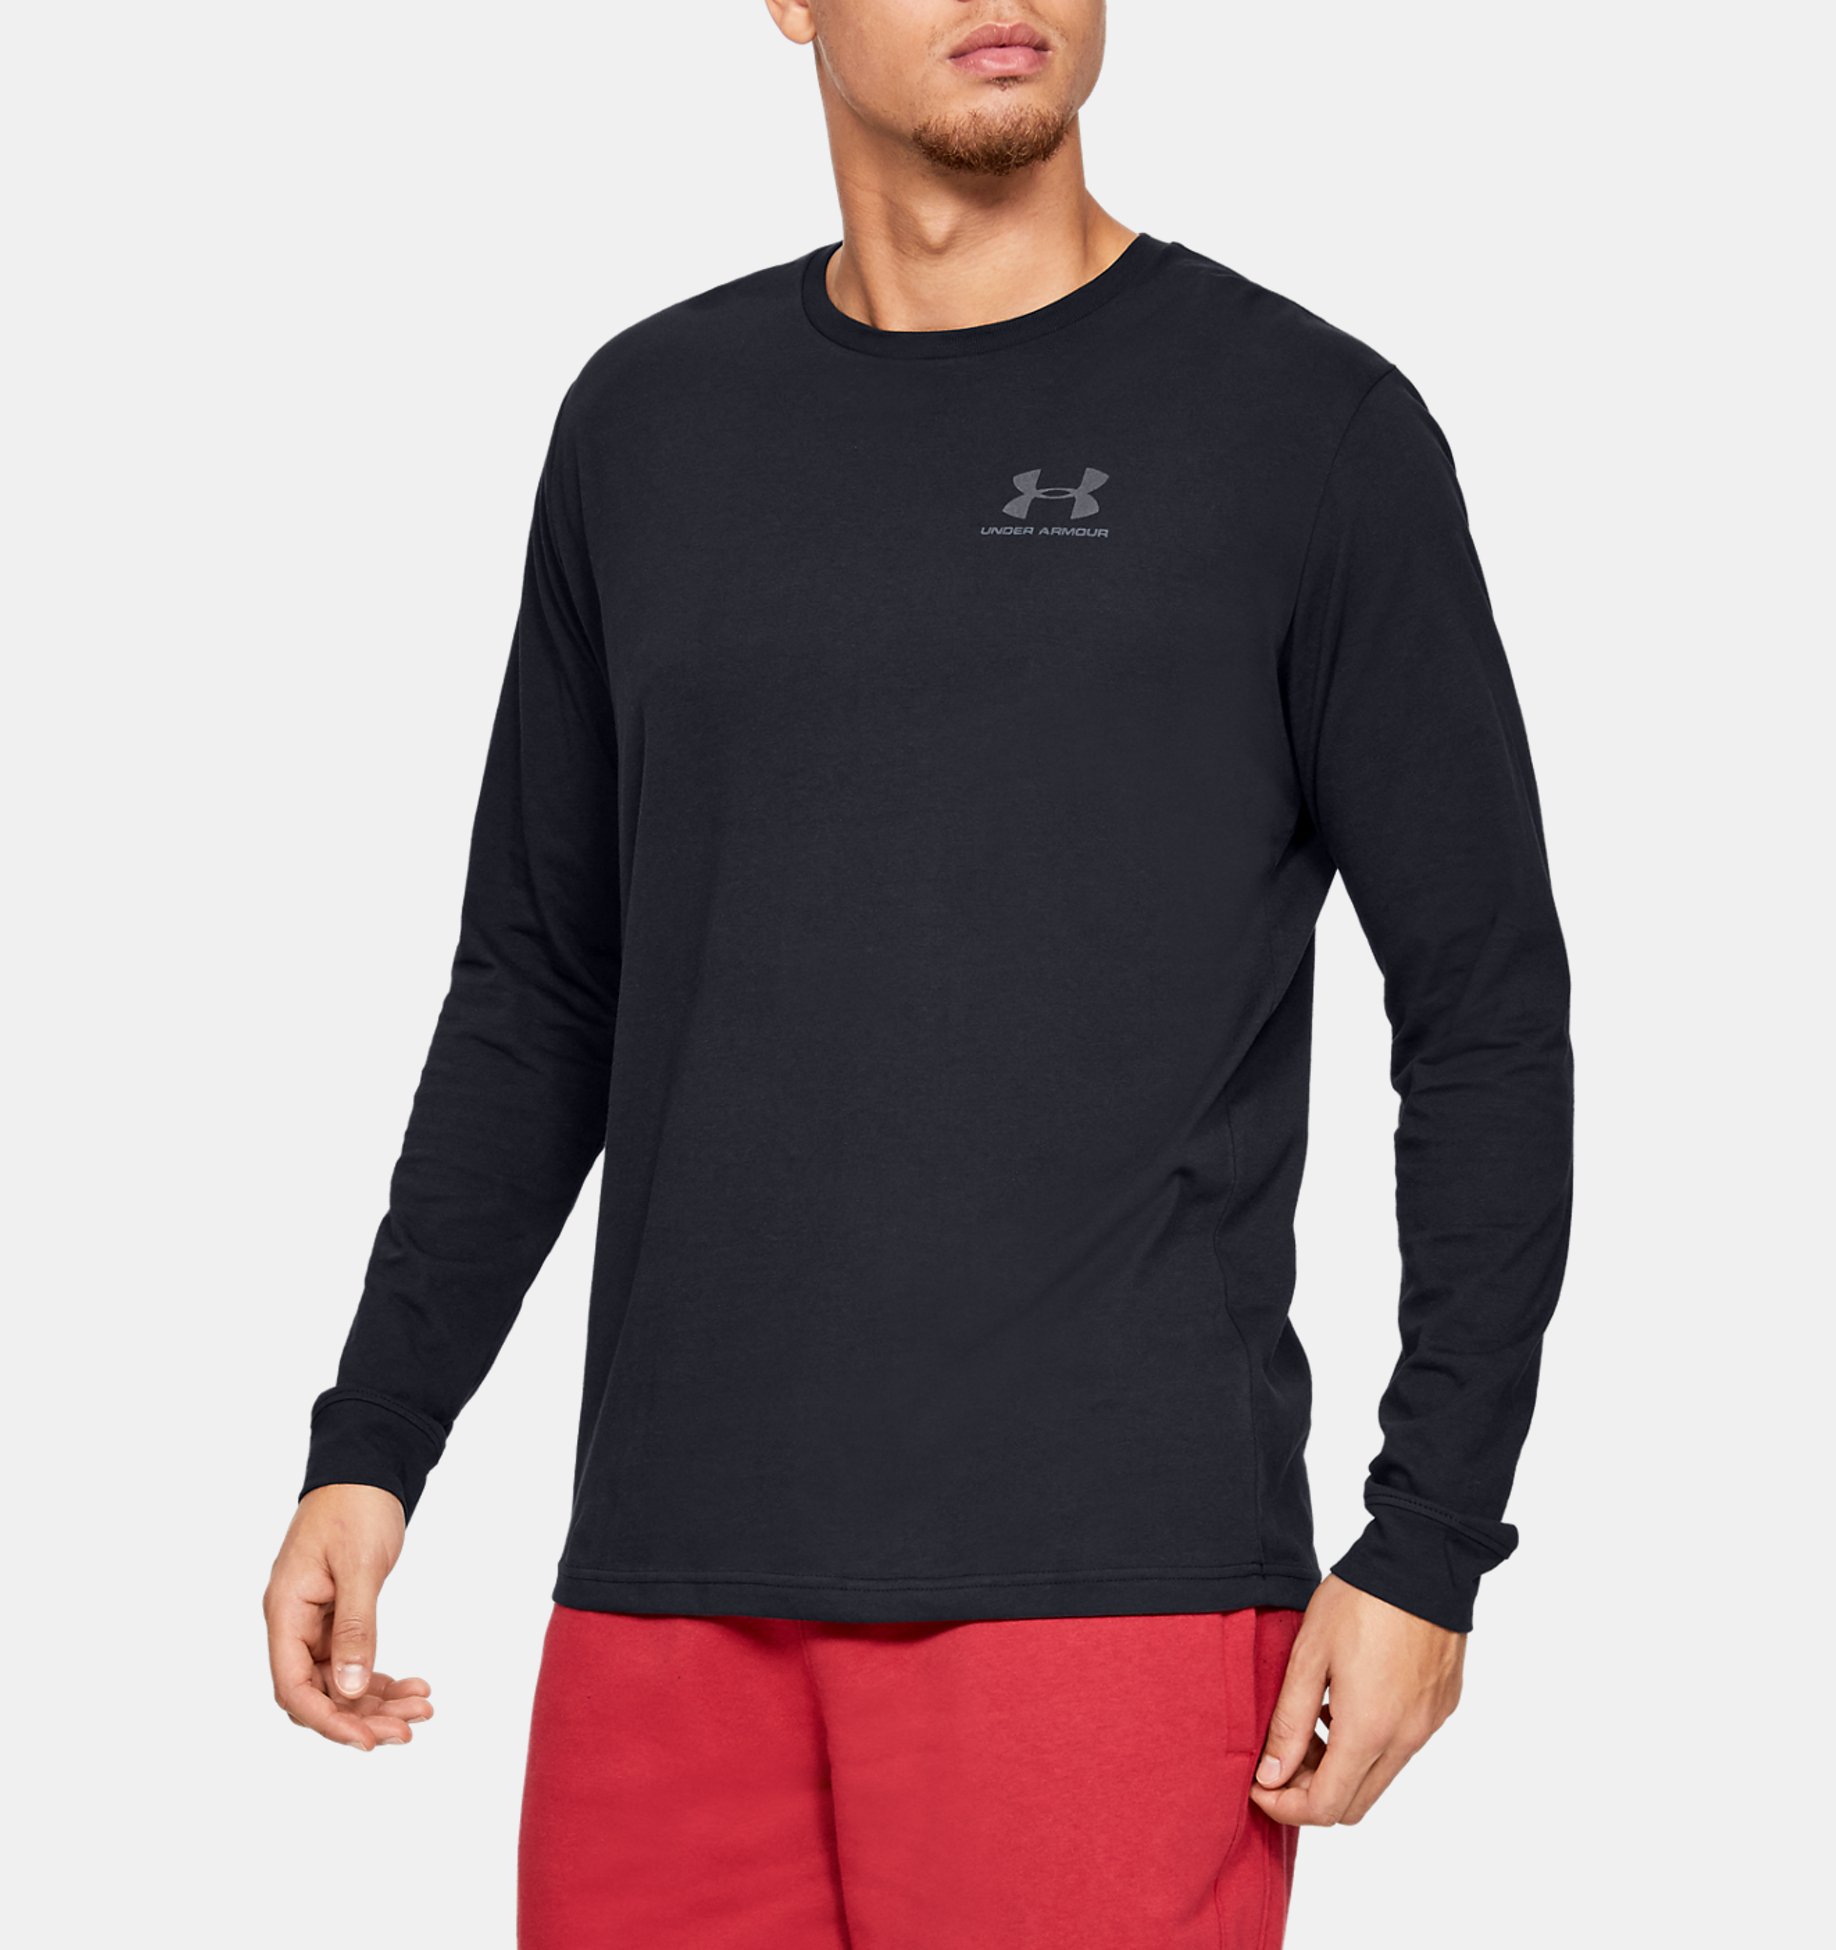 Under Armour Mens Sportstyle Logo Long Sleeve T-Shirt UA Top Lightweight Sweater 